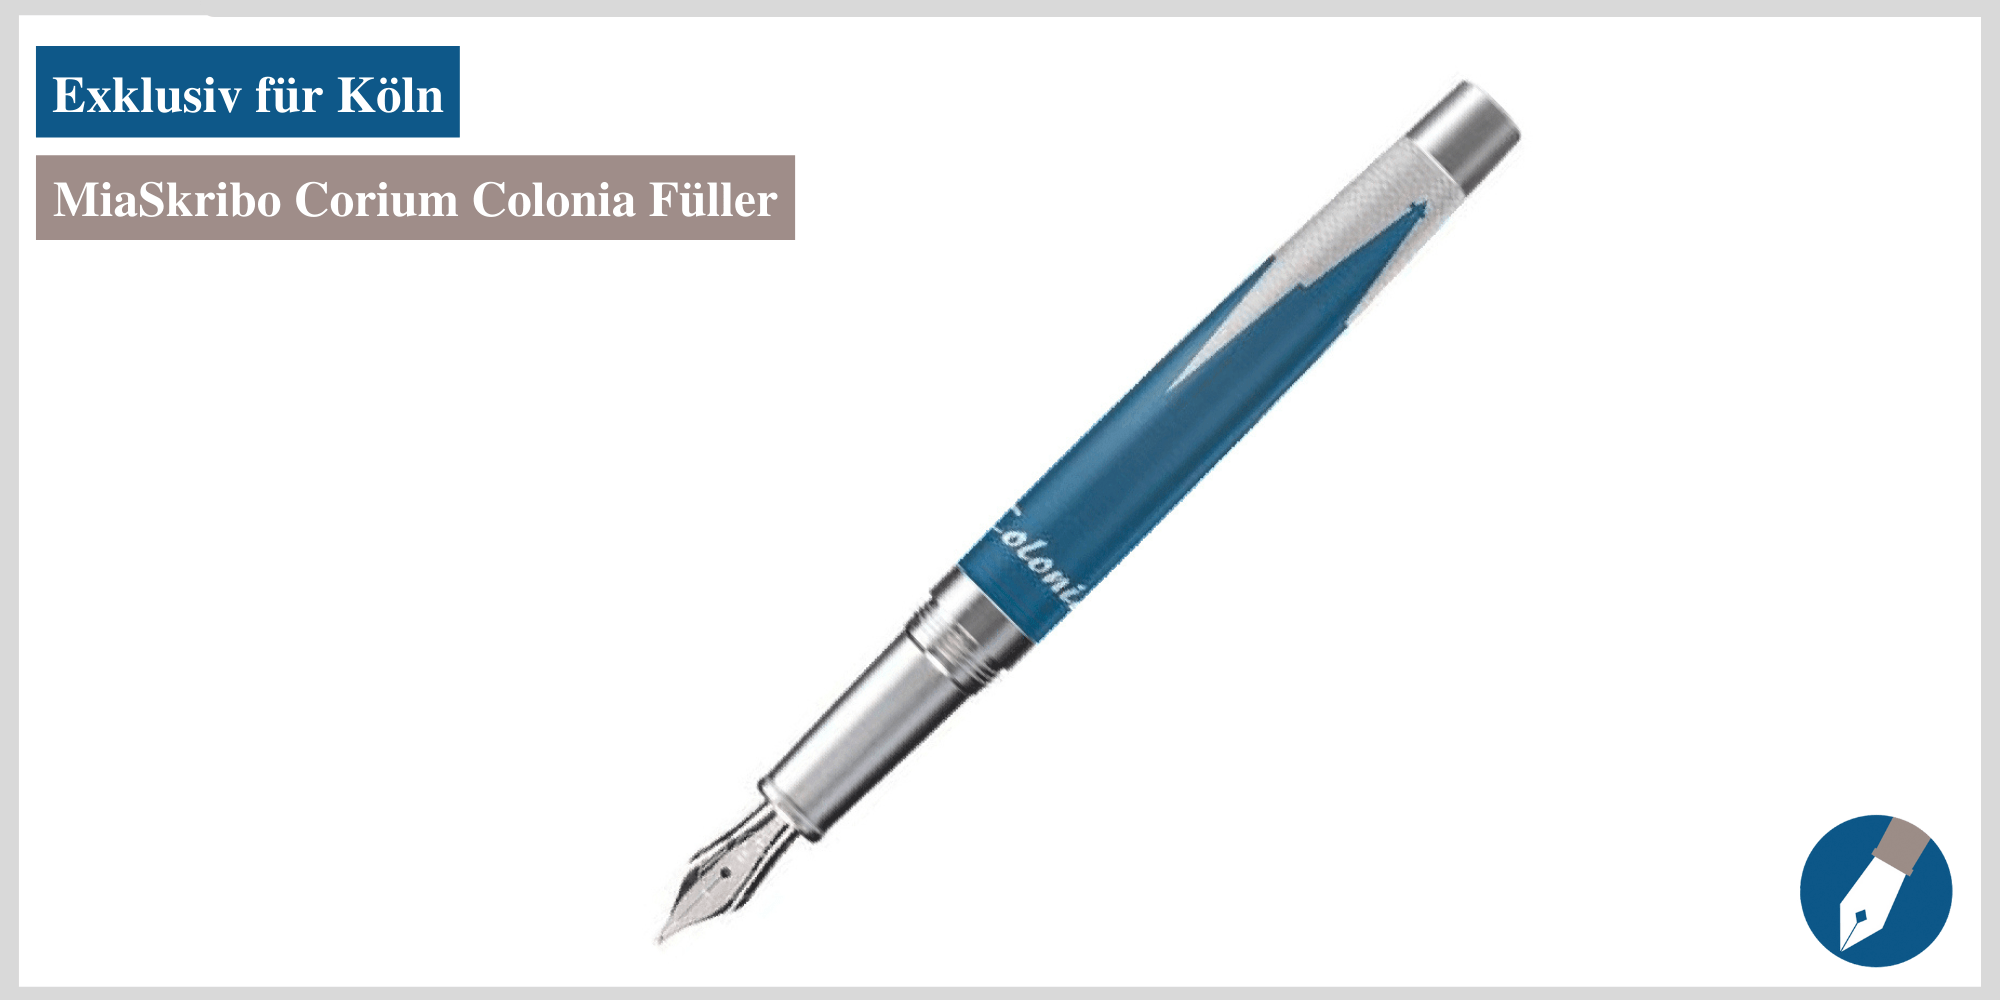 Der Füller Corium Colonia ist nun online.